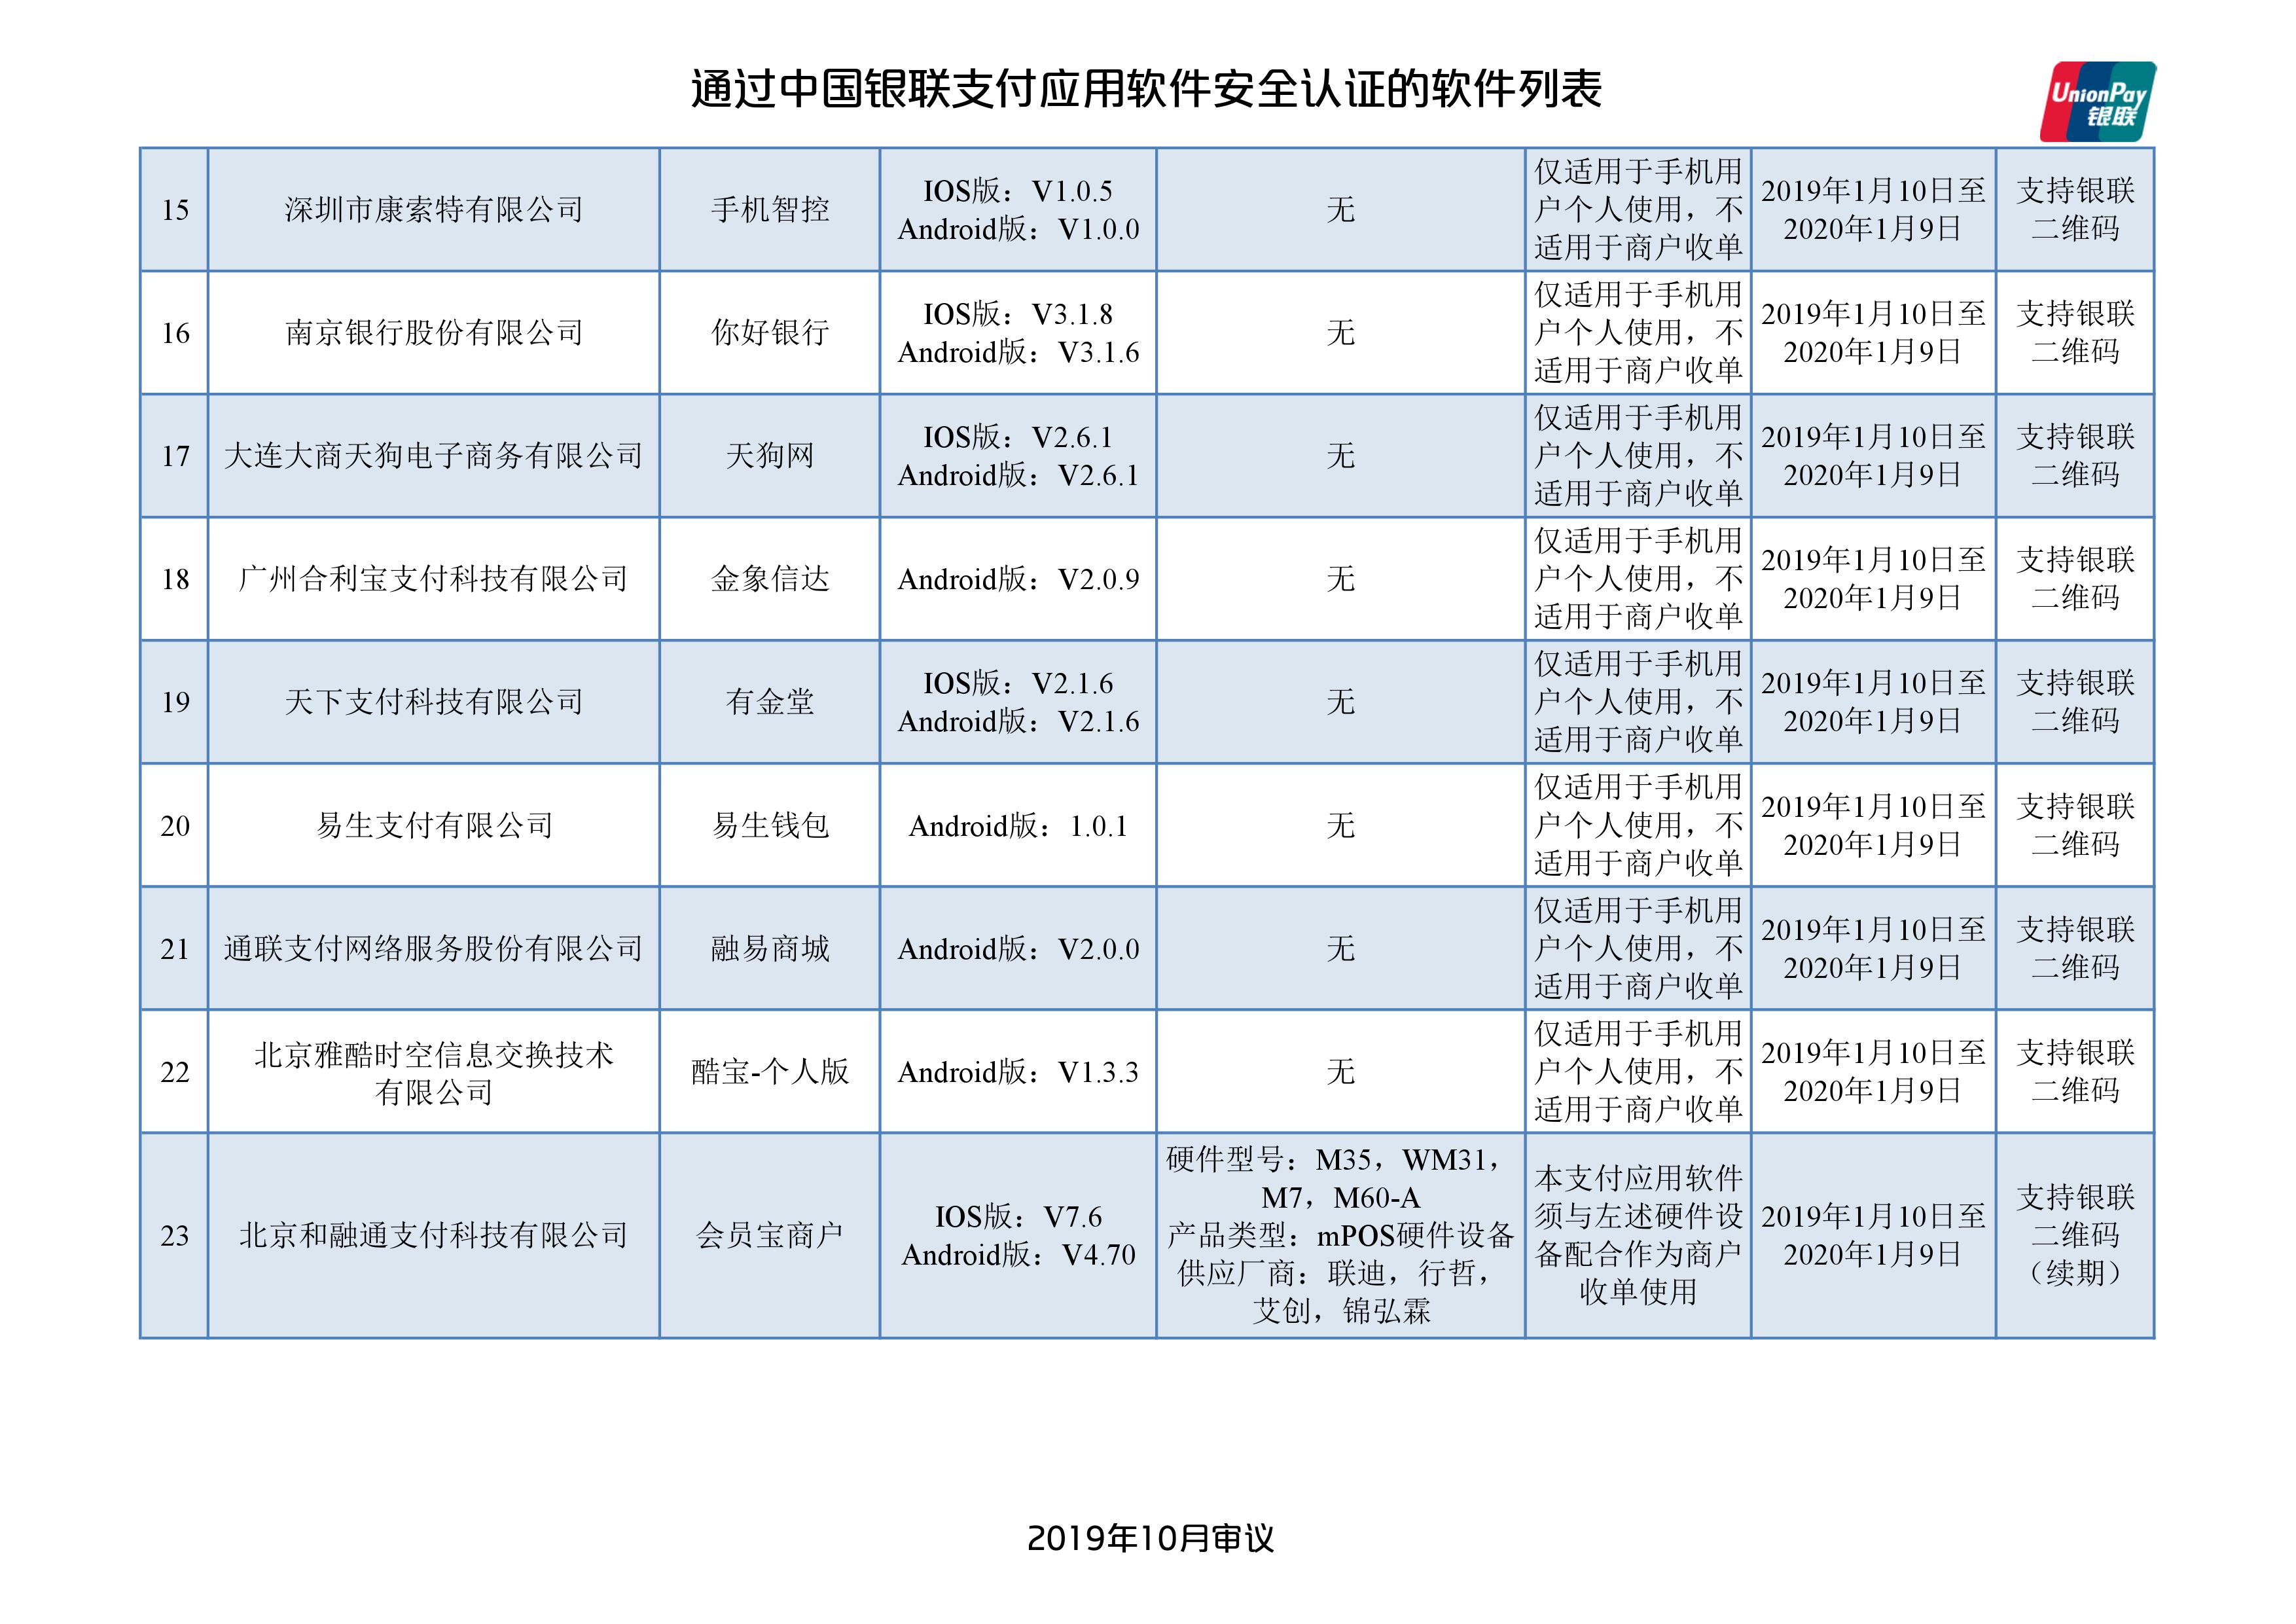 中国银联发布129款通过安全认证的支付应用App名单